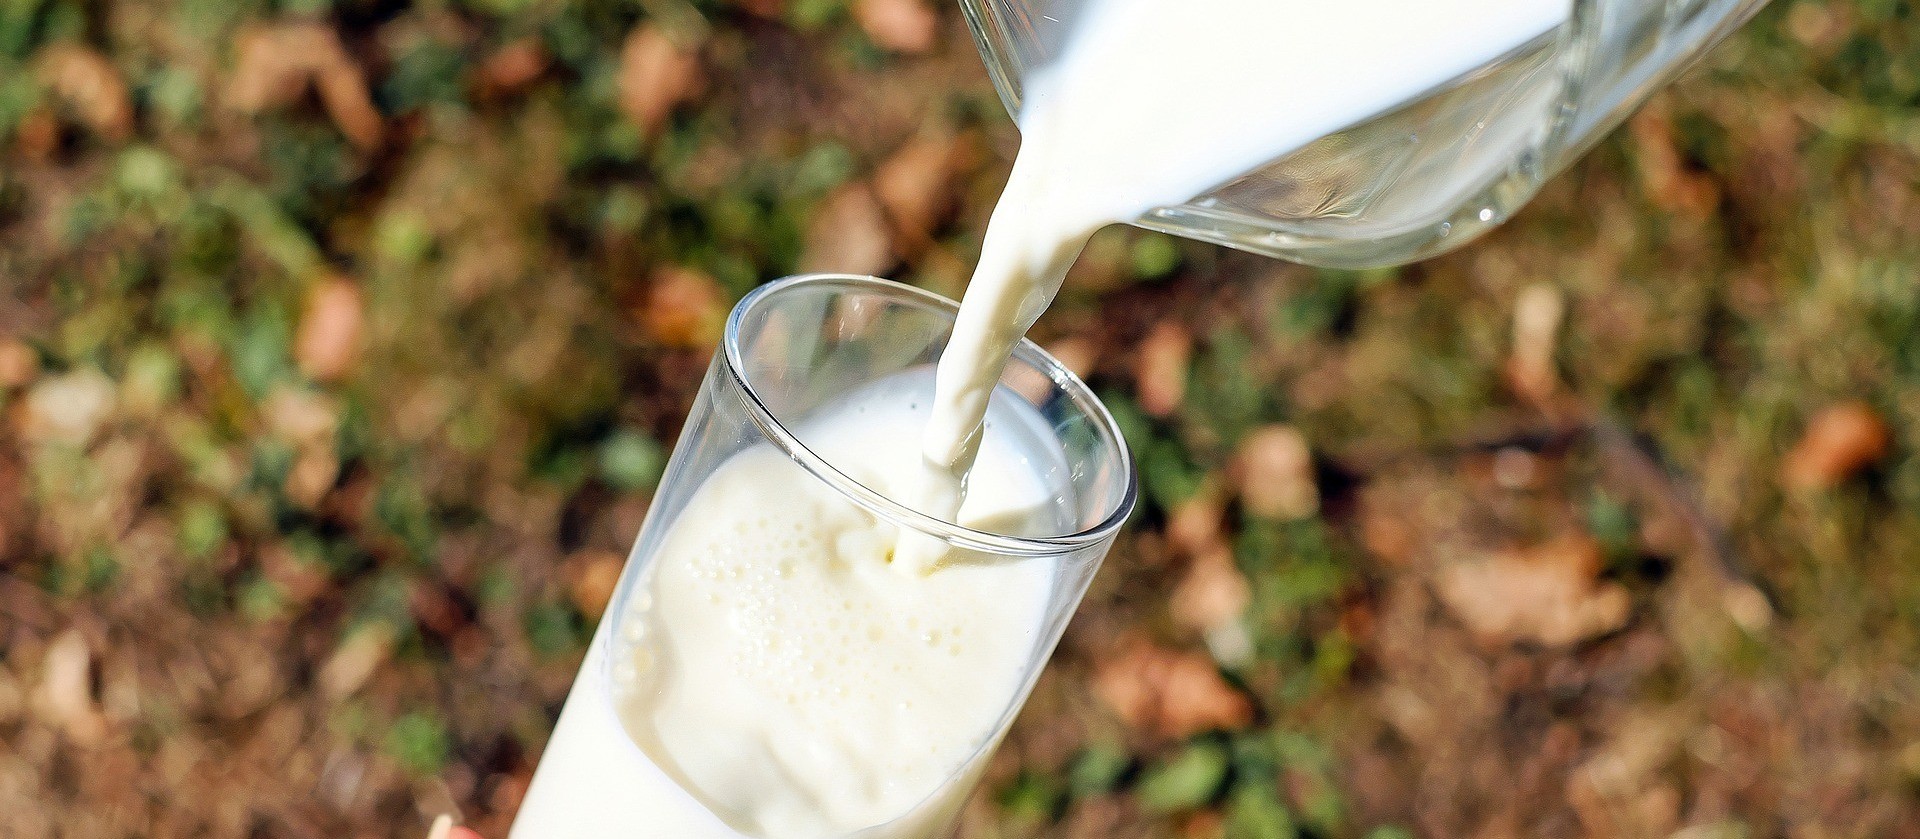 Pandemia tem capacidade de promover uma revolução silenciosa nas fazendas de leite